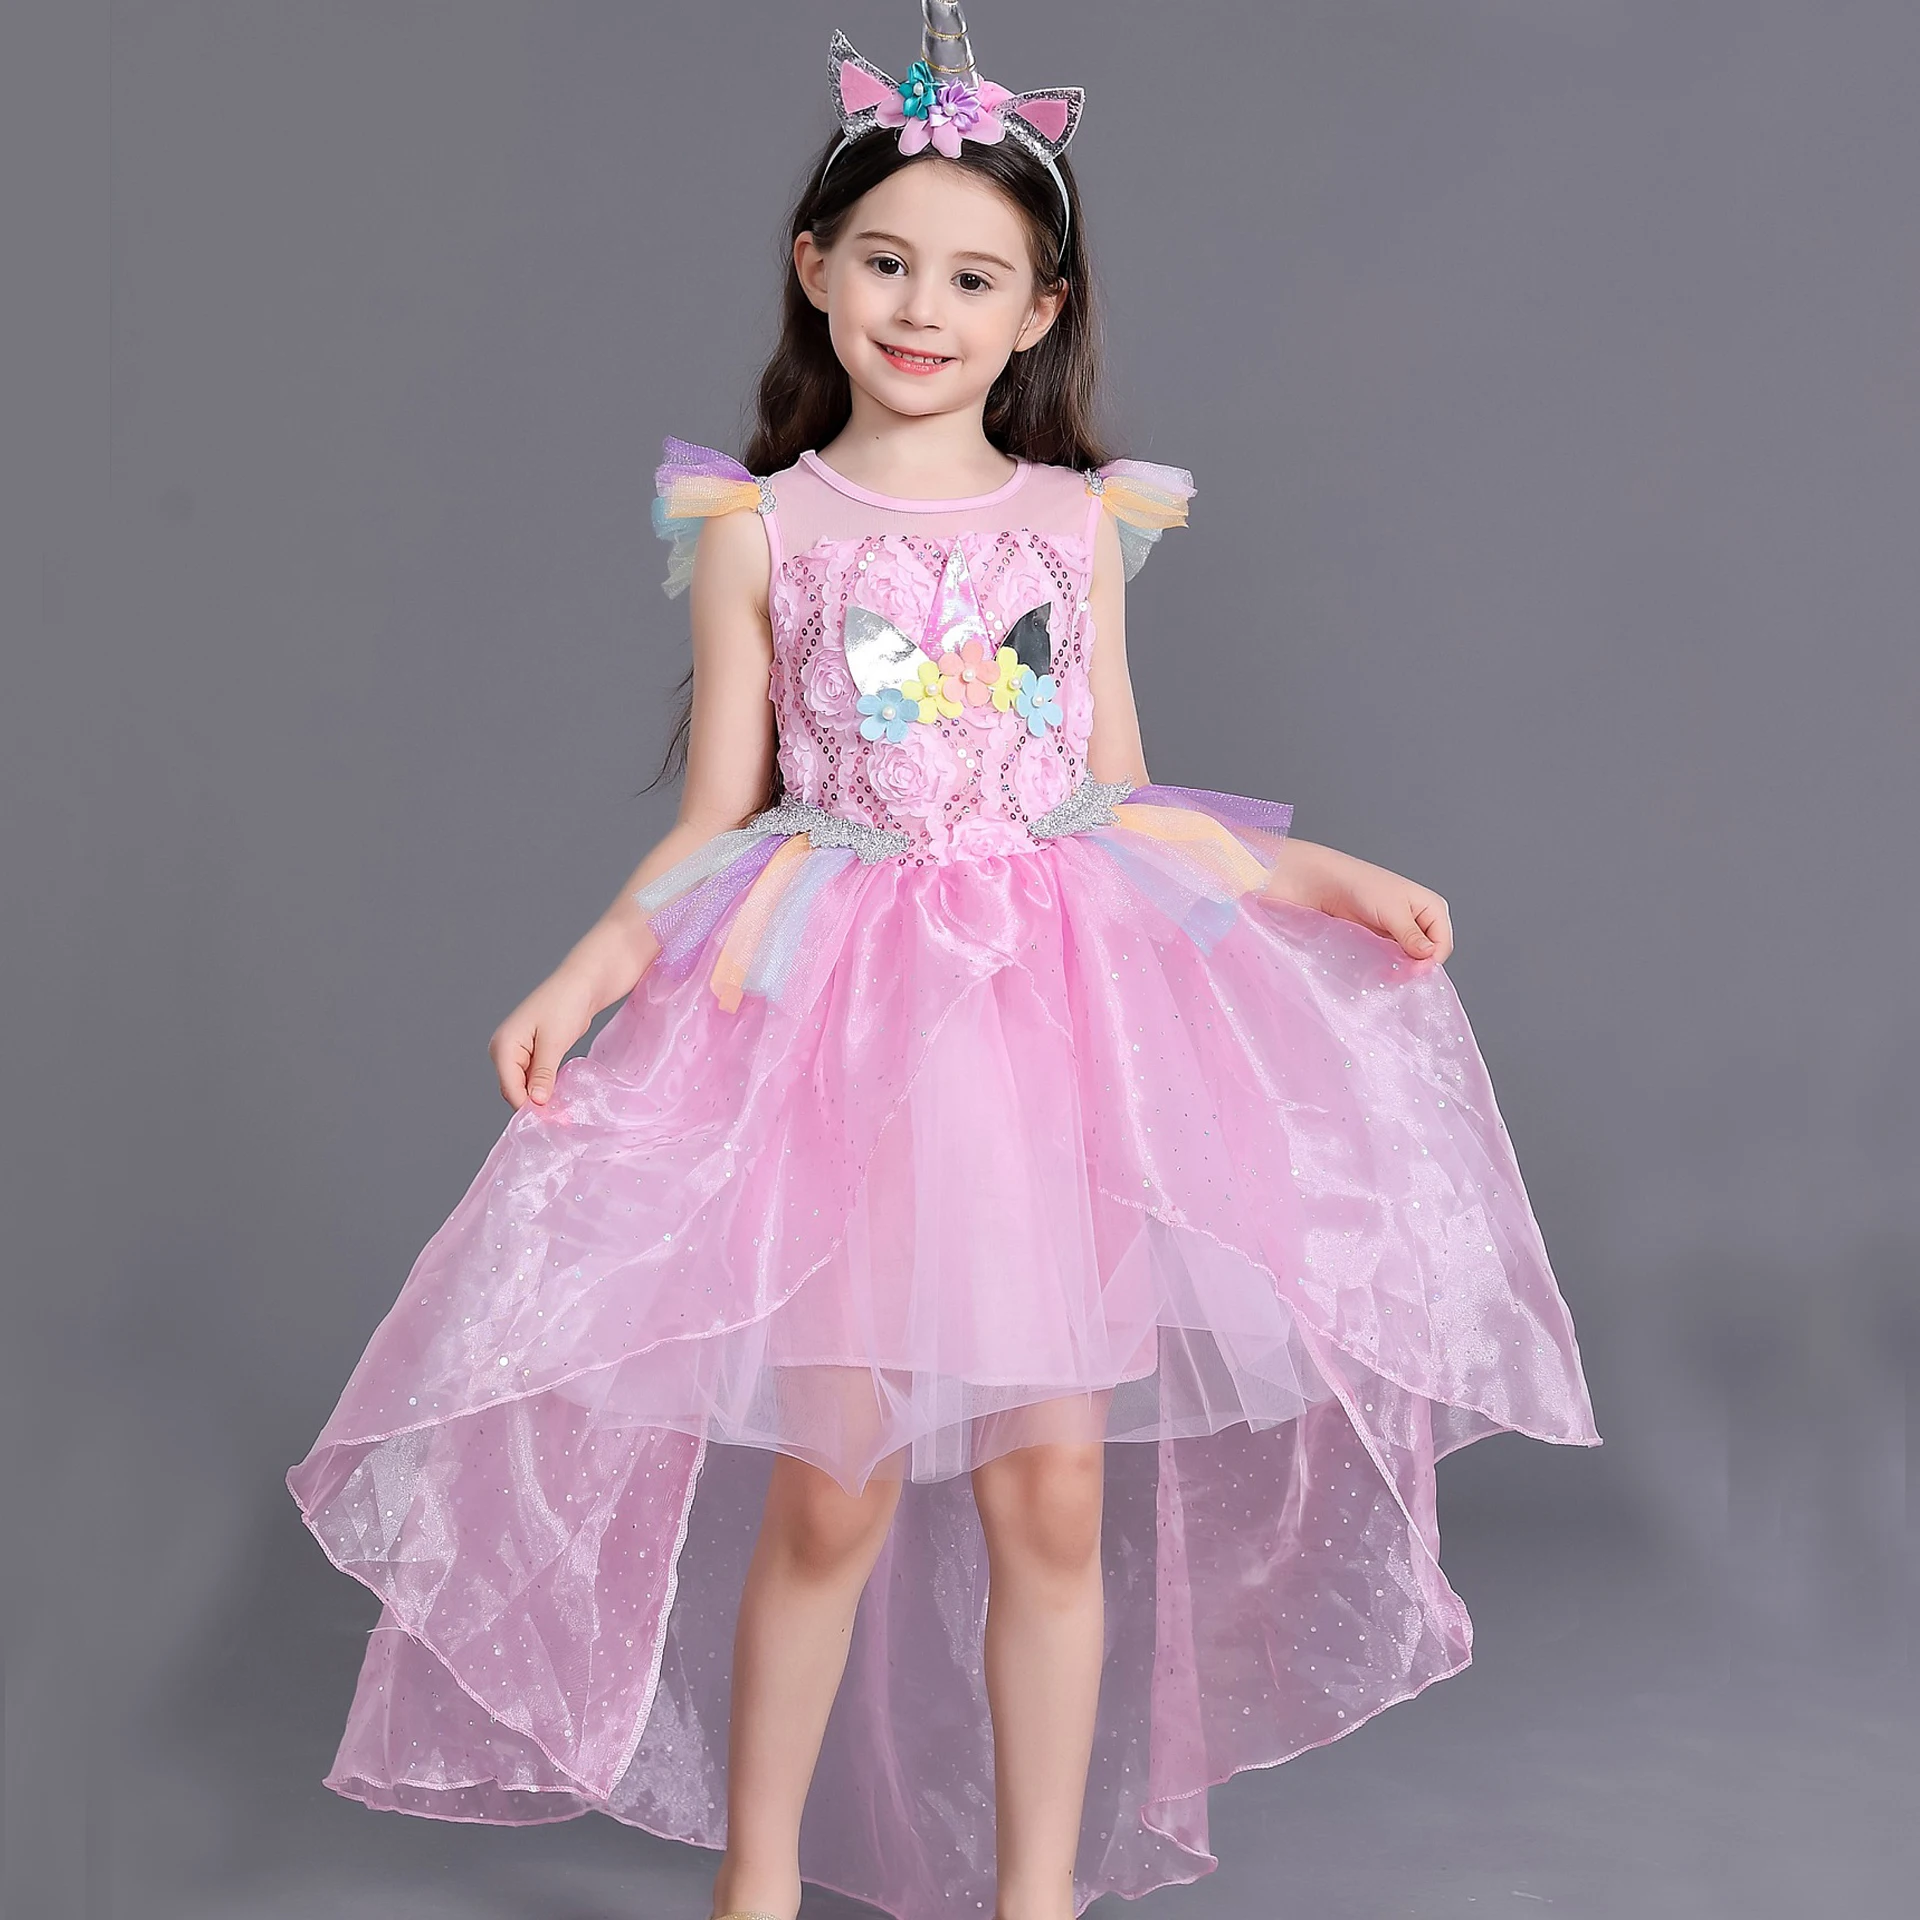 Подростковые платья для девочек Единорог Костюм принцессы праздничная одежда Vestido радужного цвета для маленьких одежда для детей возрастом 2, 5, 7, 9 лет Детская праздничная одежда; платье со шлейфом